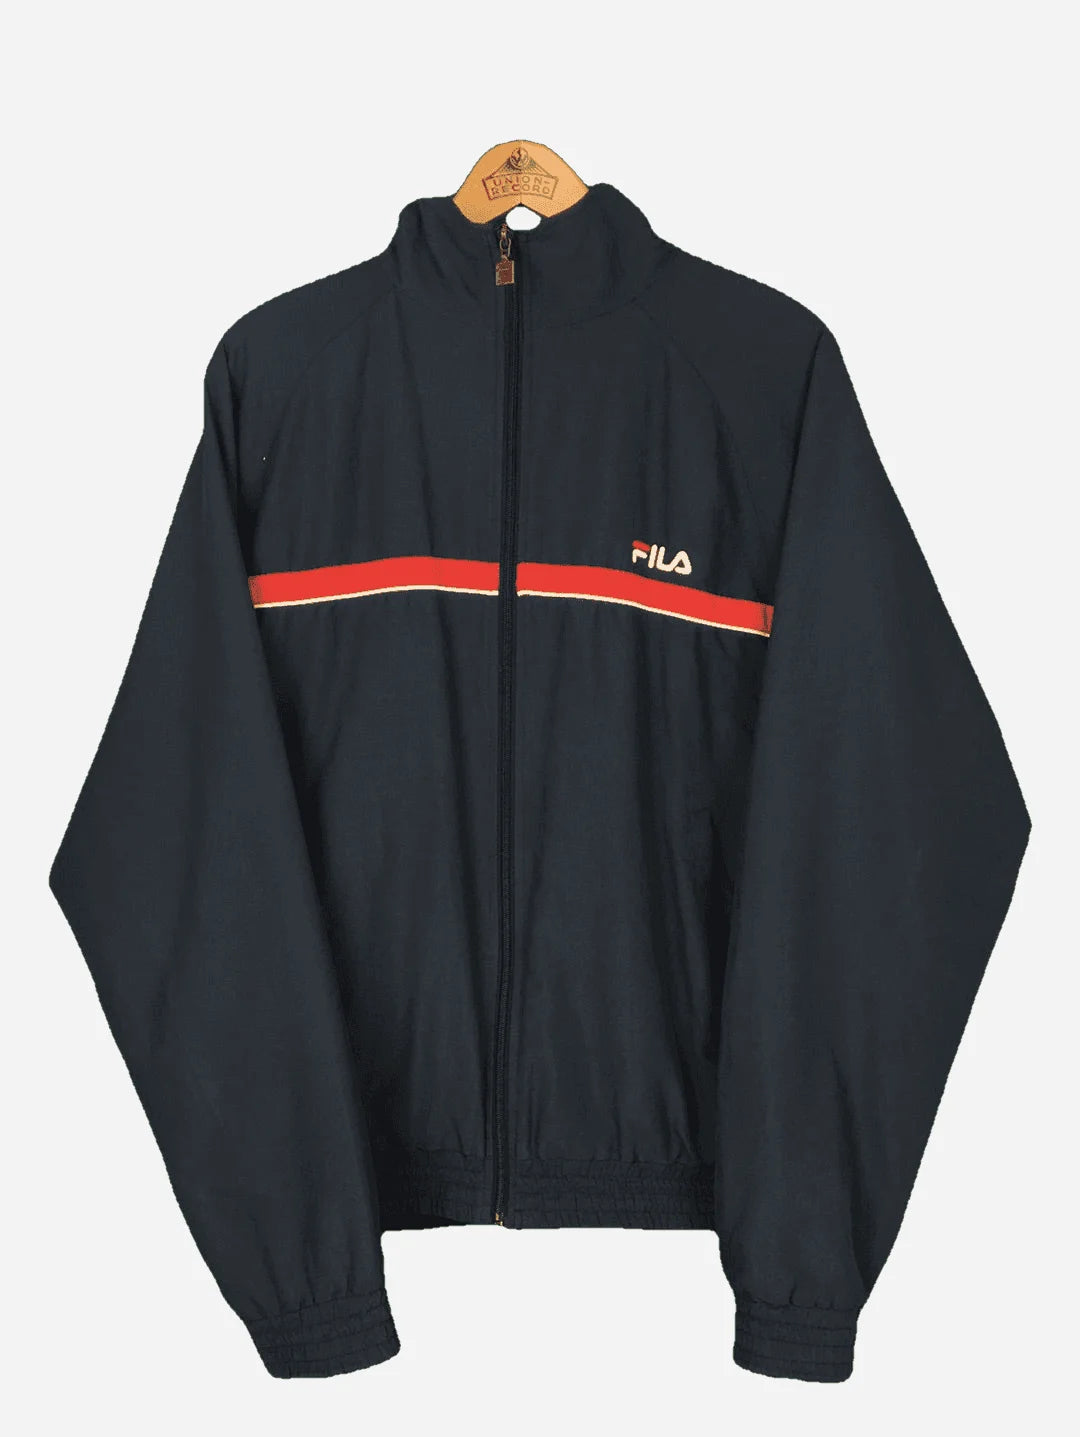 Fila Jacket (XL)